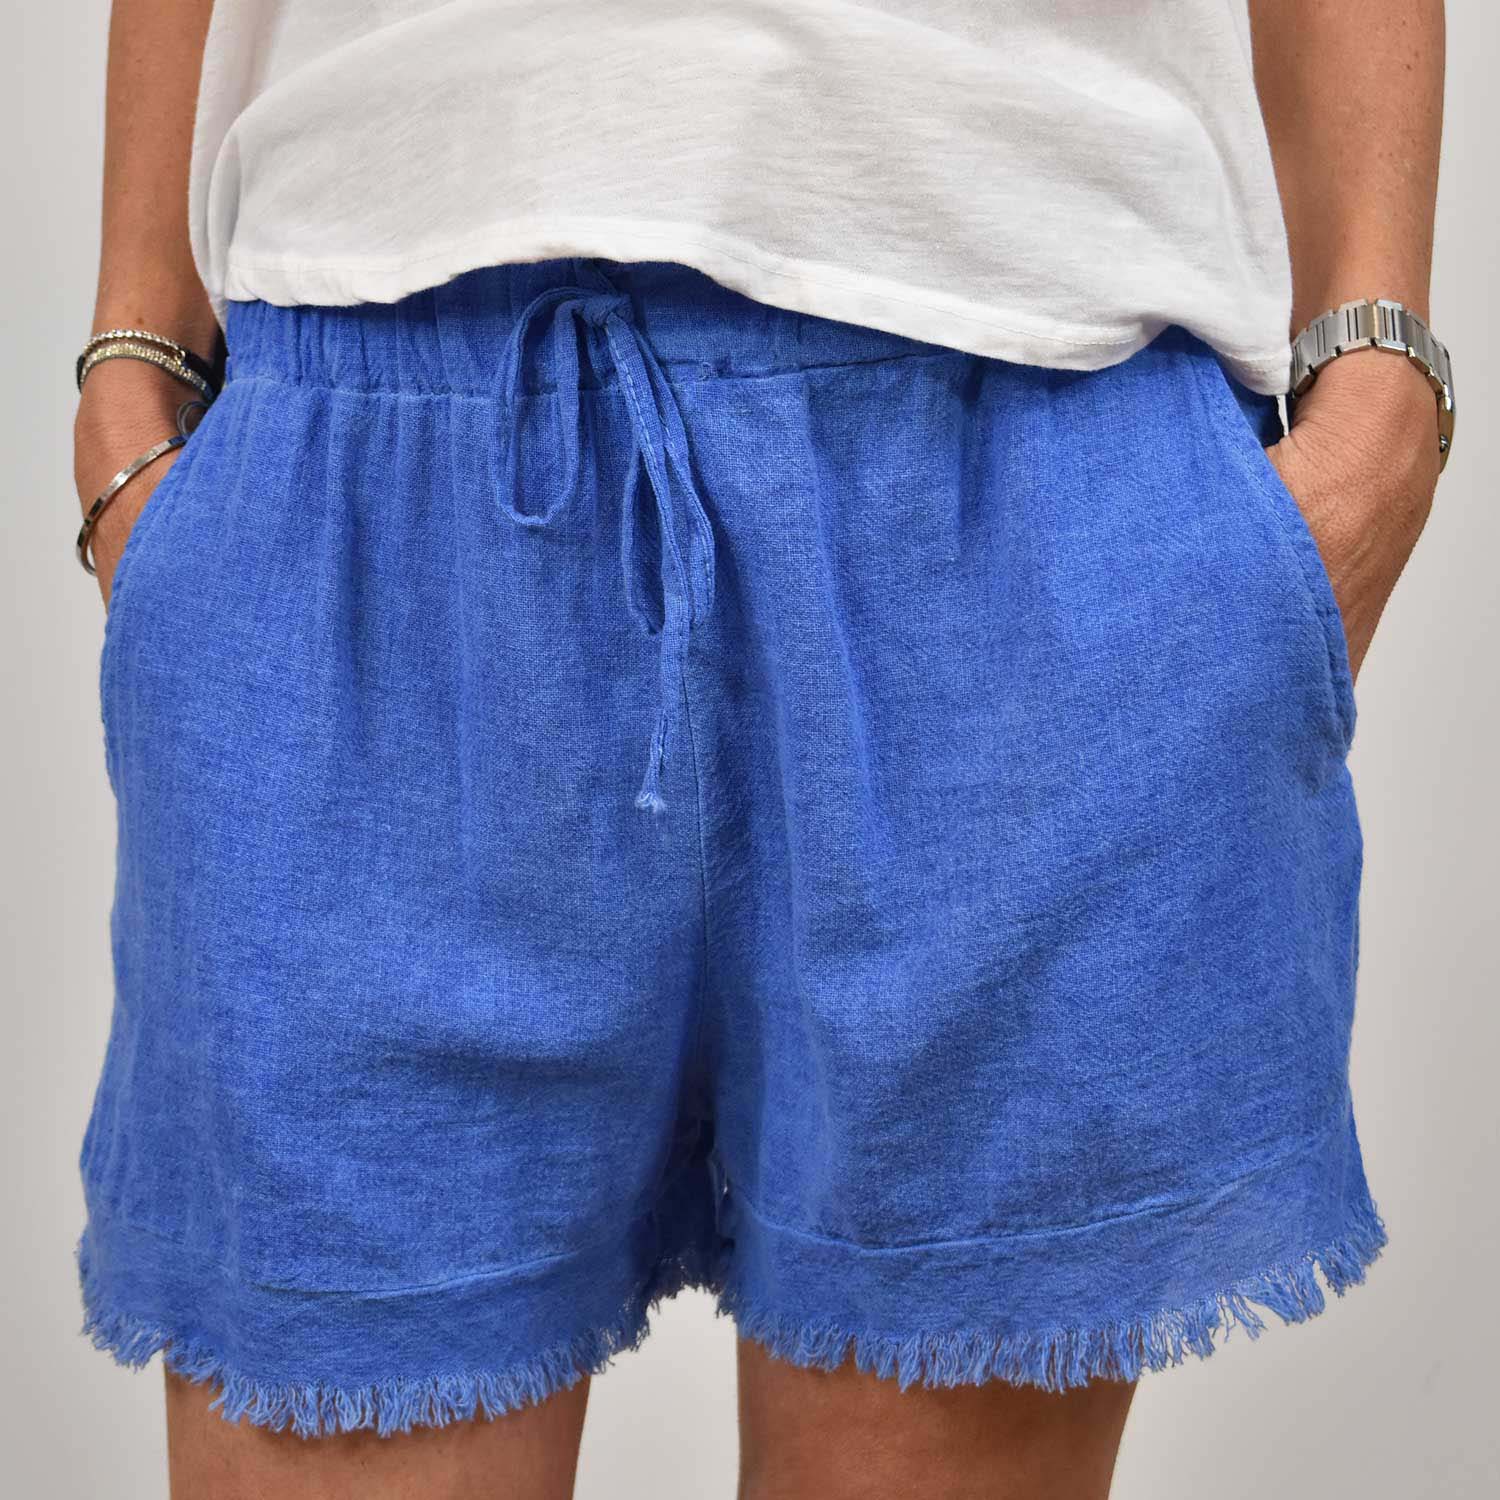 Blue frayed shorts